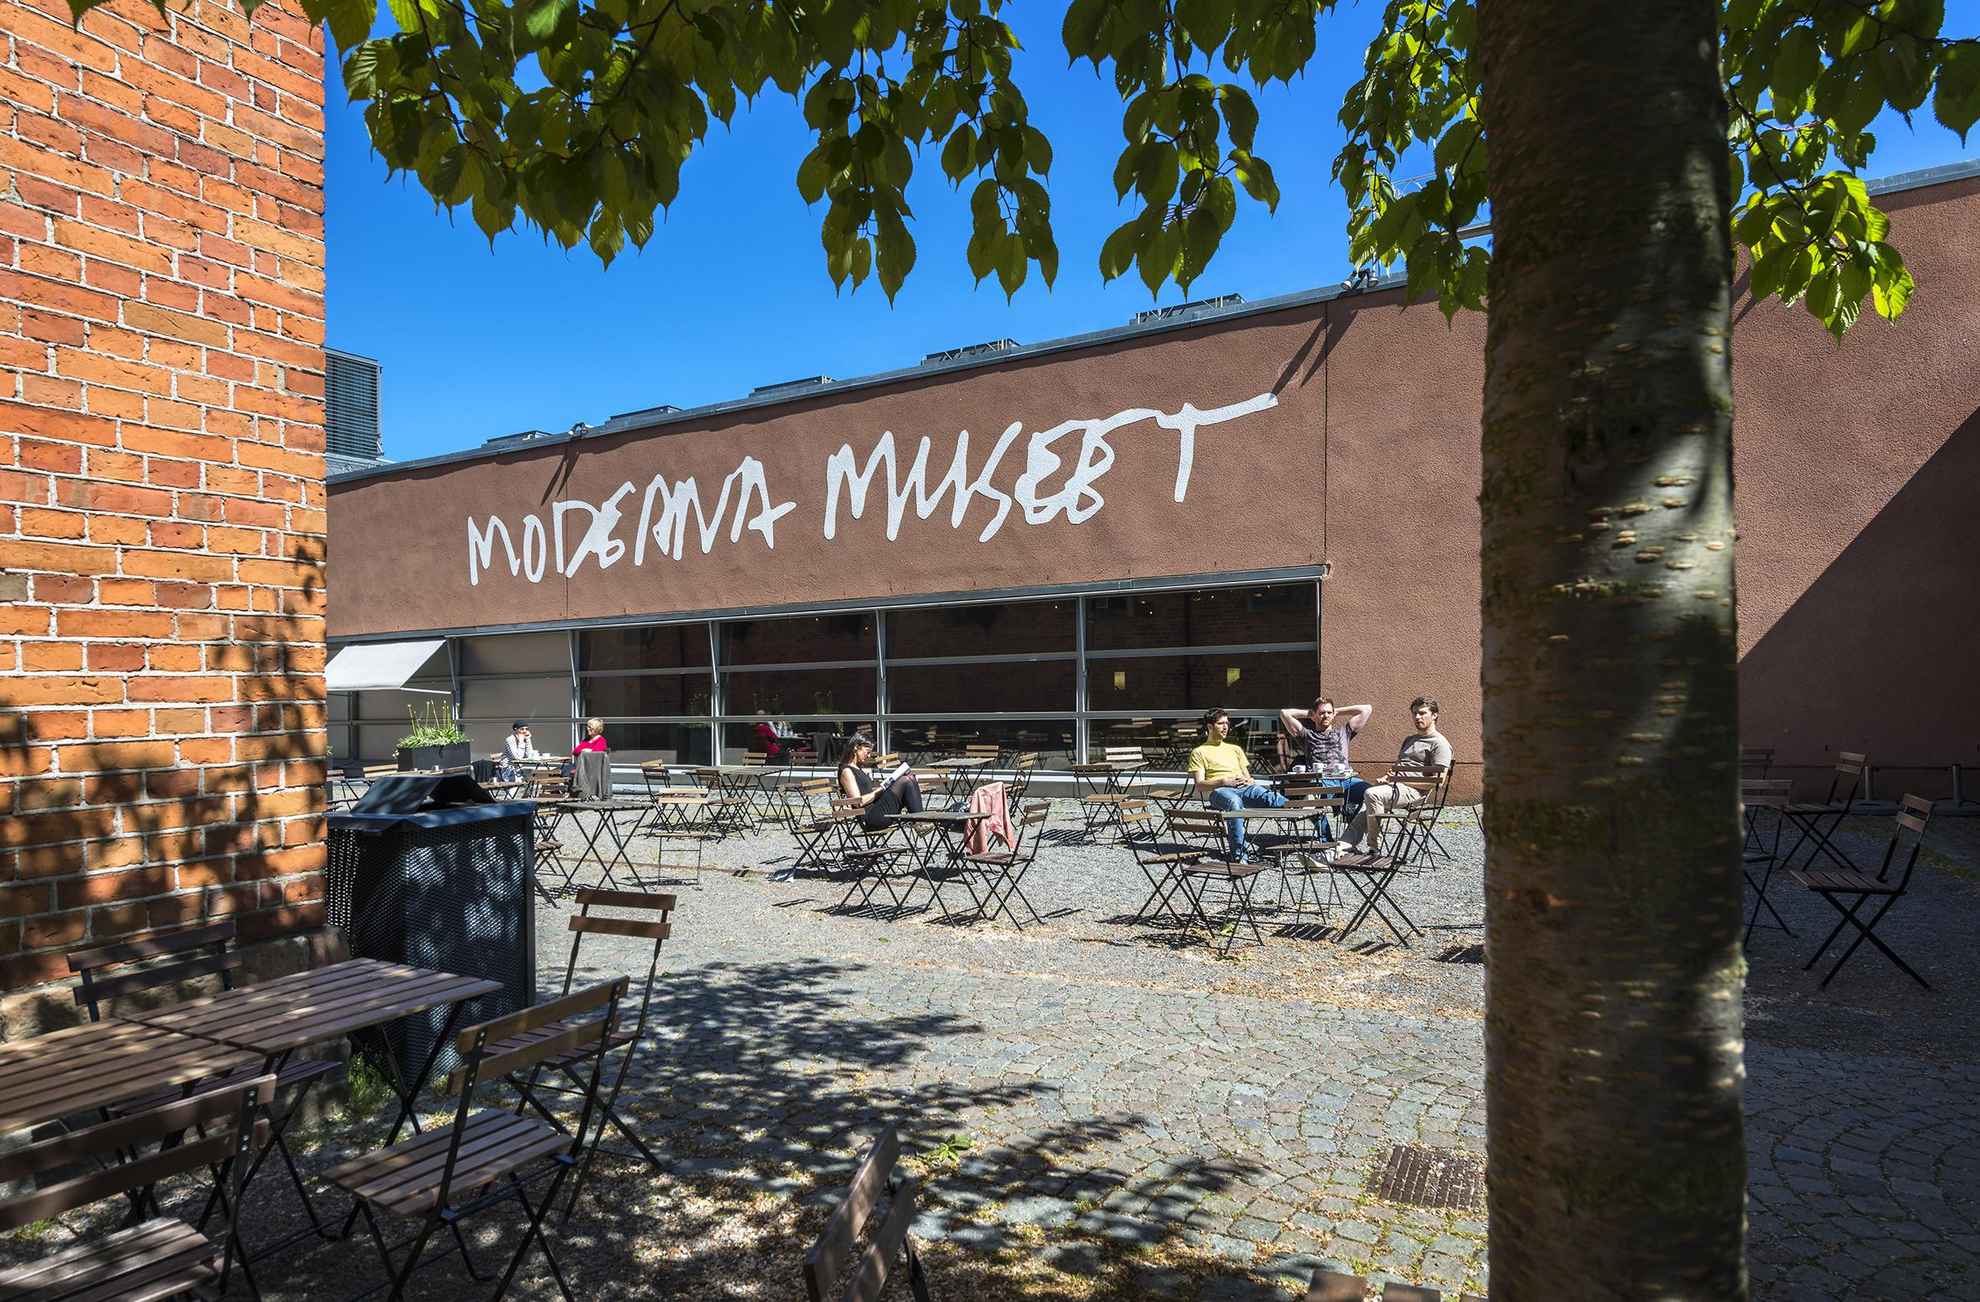 Een binnenplaats met mensen die aan cafétafels zitten, buiten een gebouw met de tekst "Moderna museet".